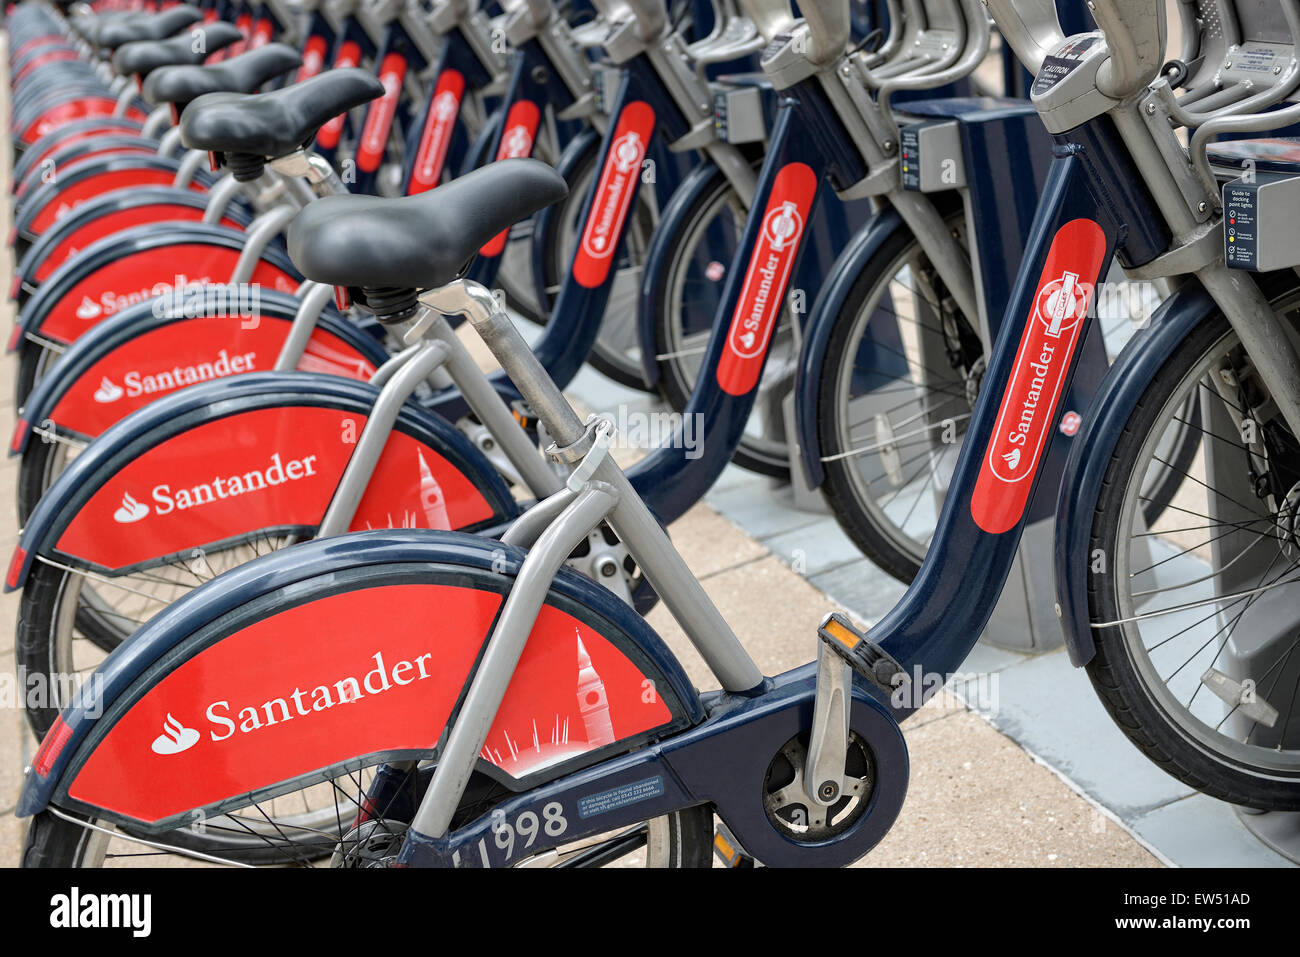 Santander Cycle Hire Boris Bikes at a Docking Station, London, England, UK. Stock Photo